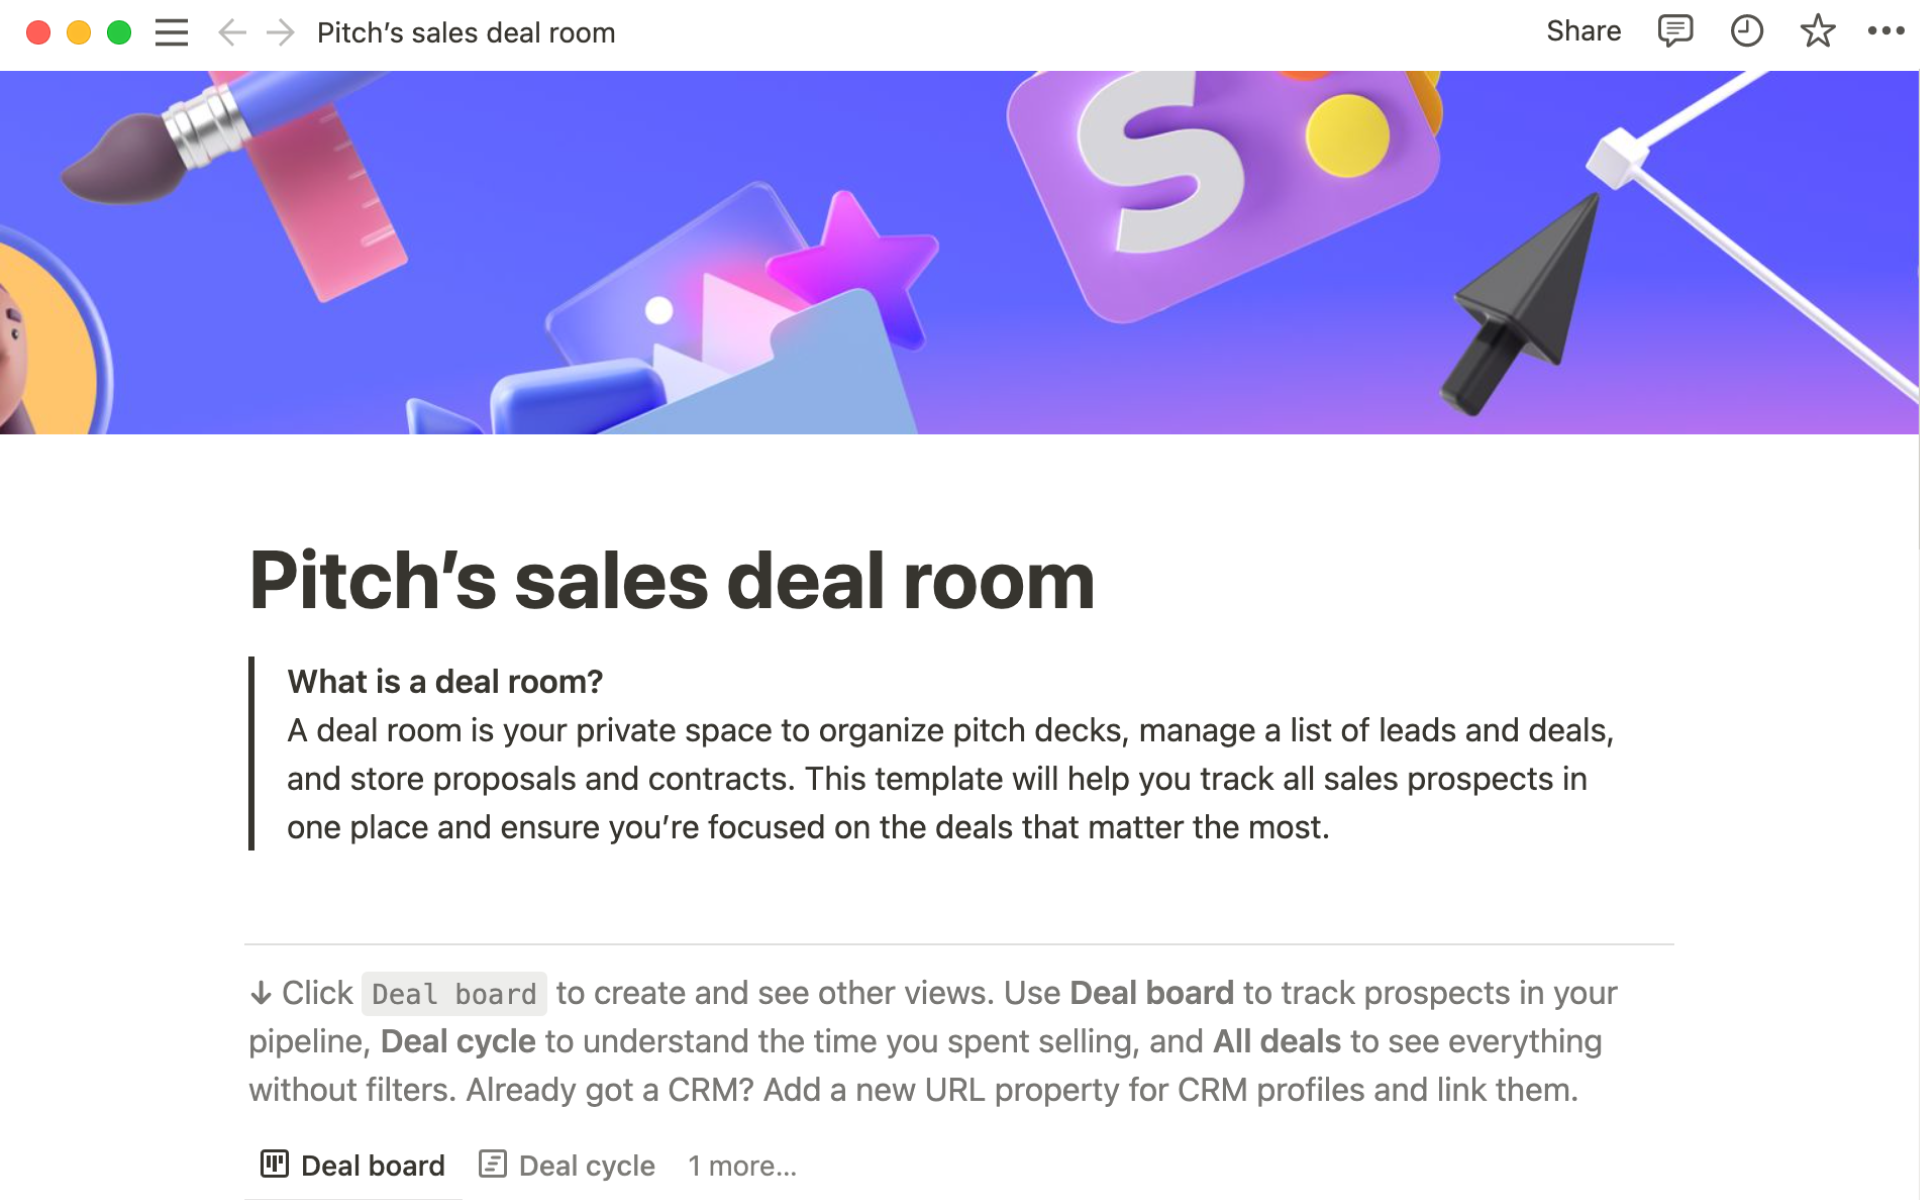 Uma prévia do modelo para Pitch’s sales deal room